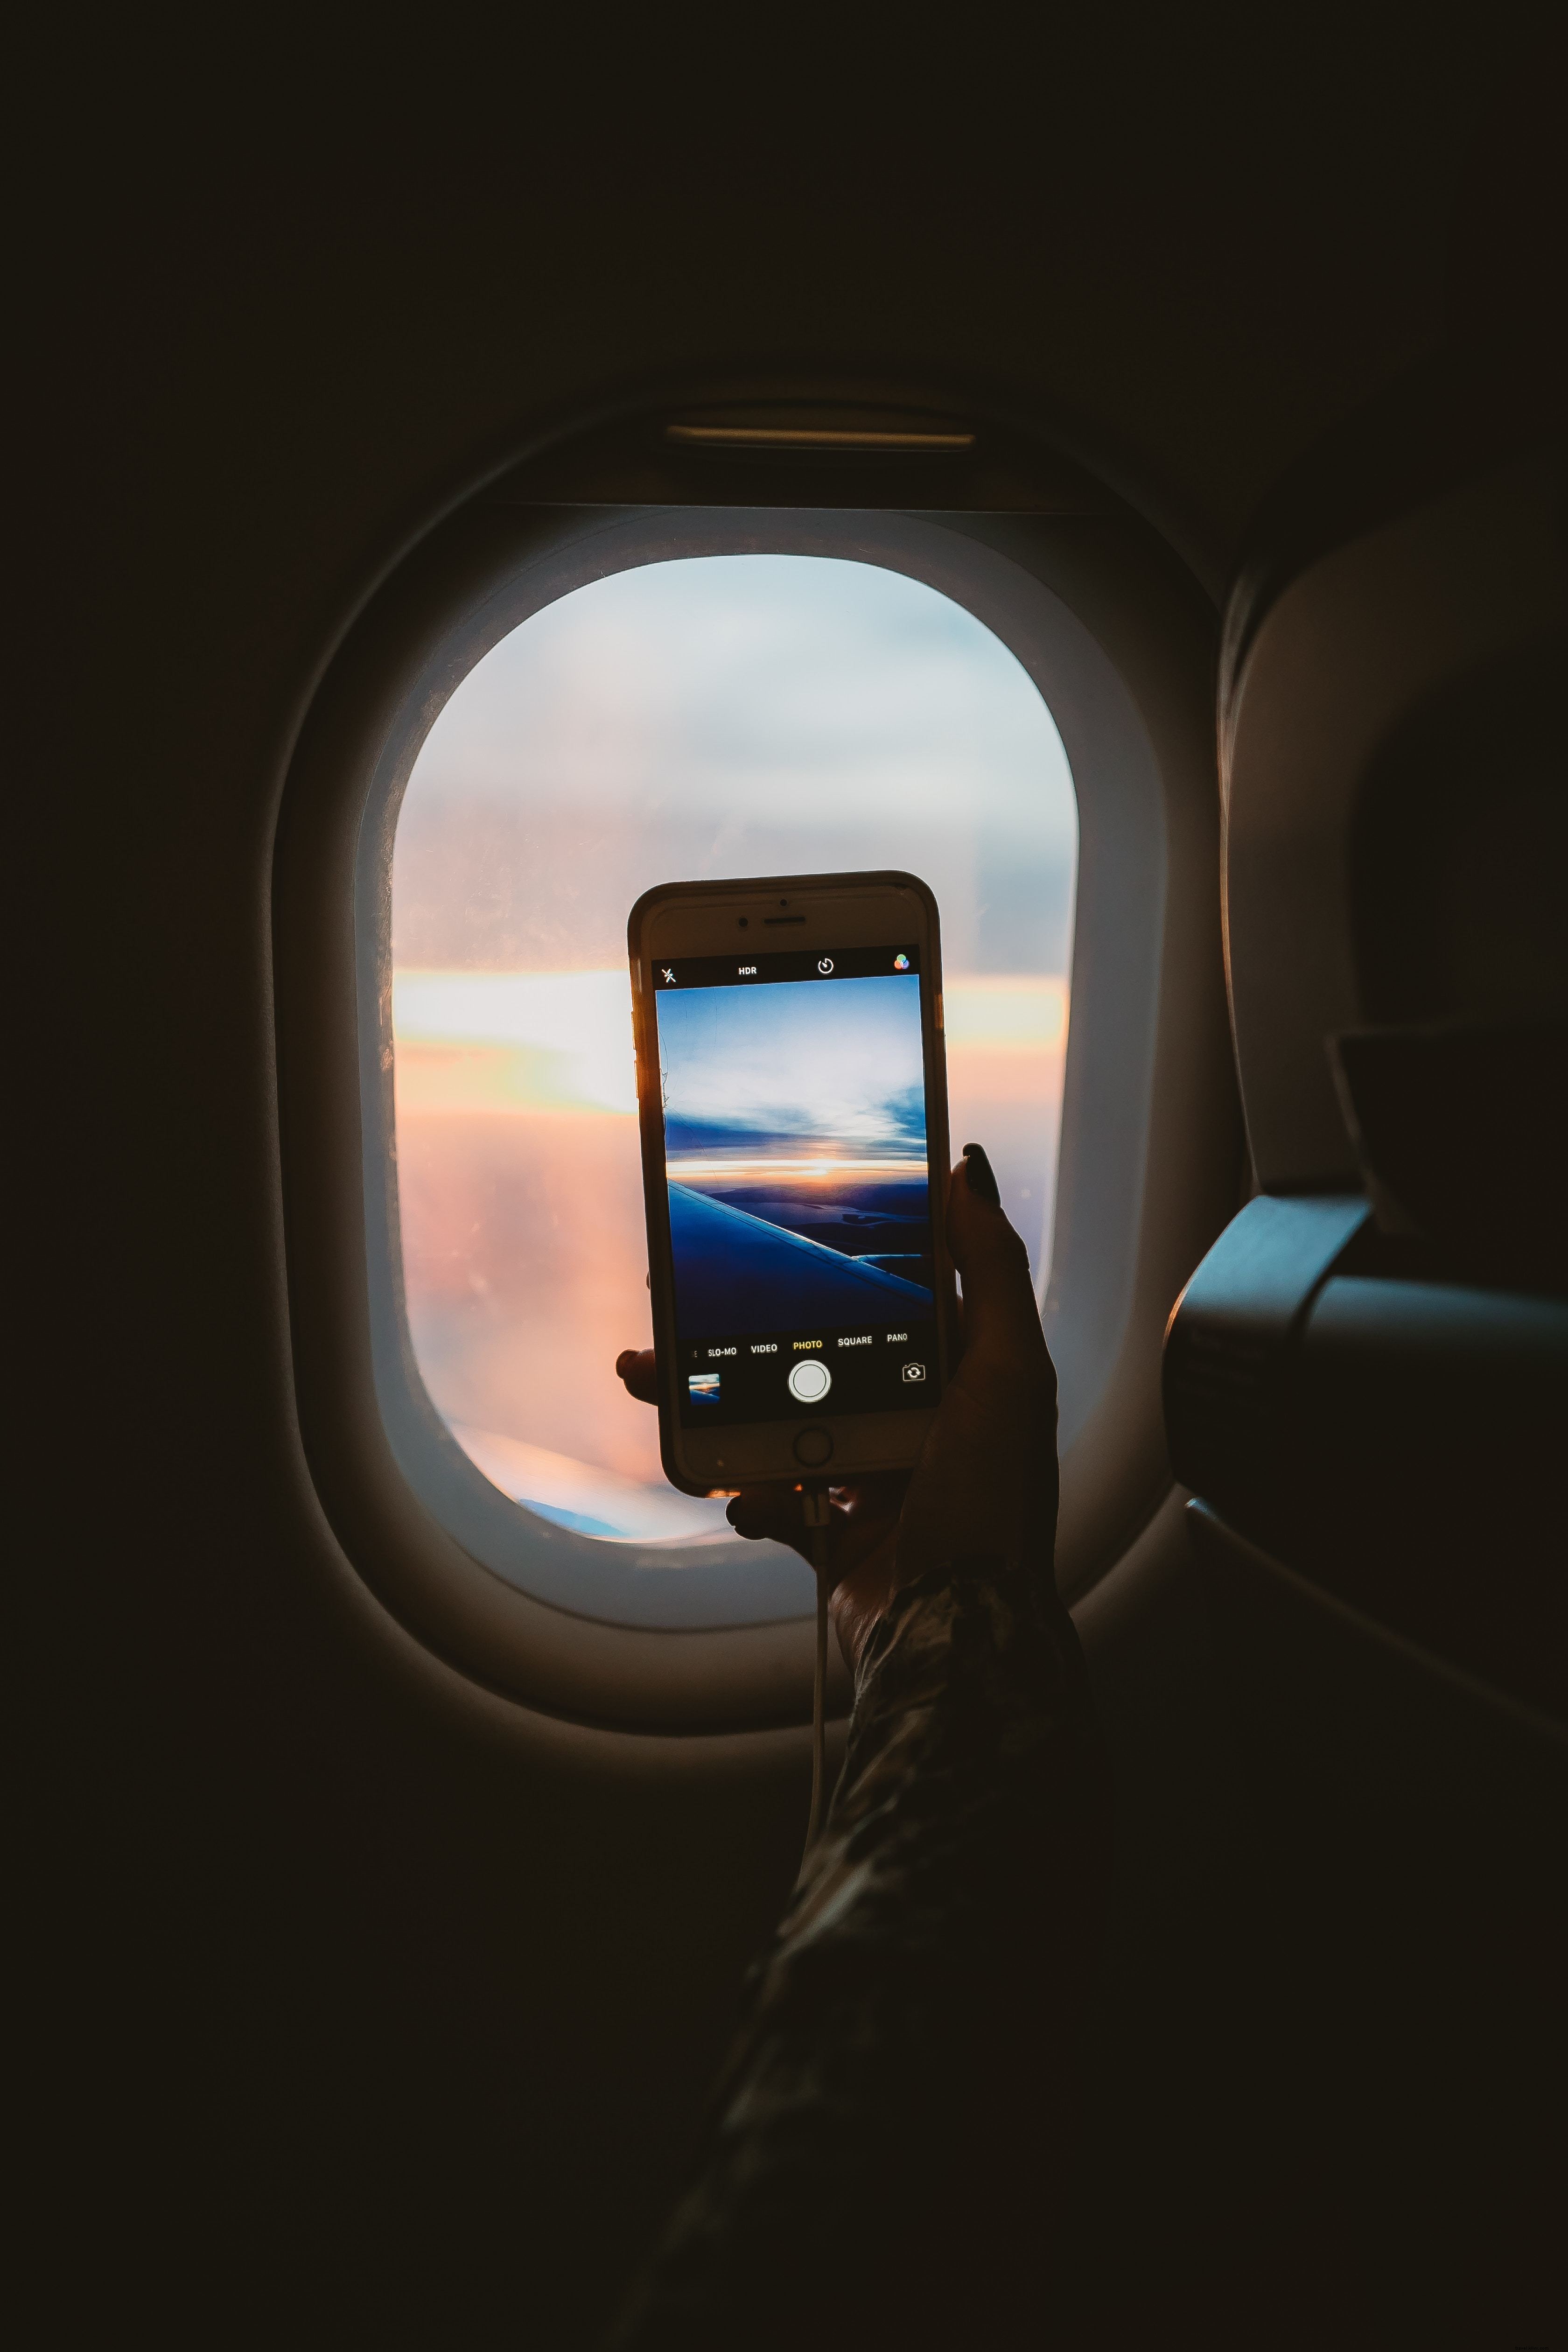 飛行機の窓から写真を撮る